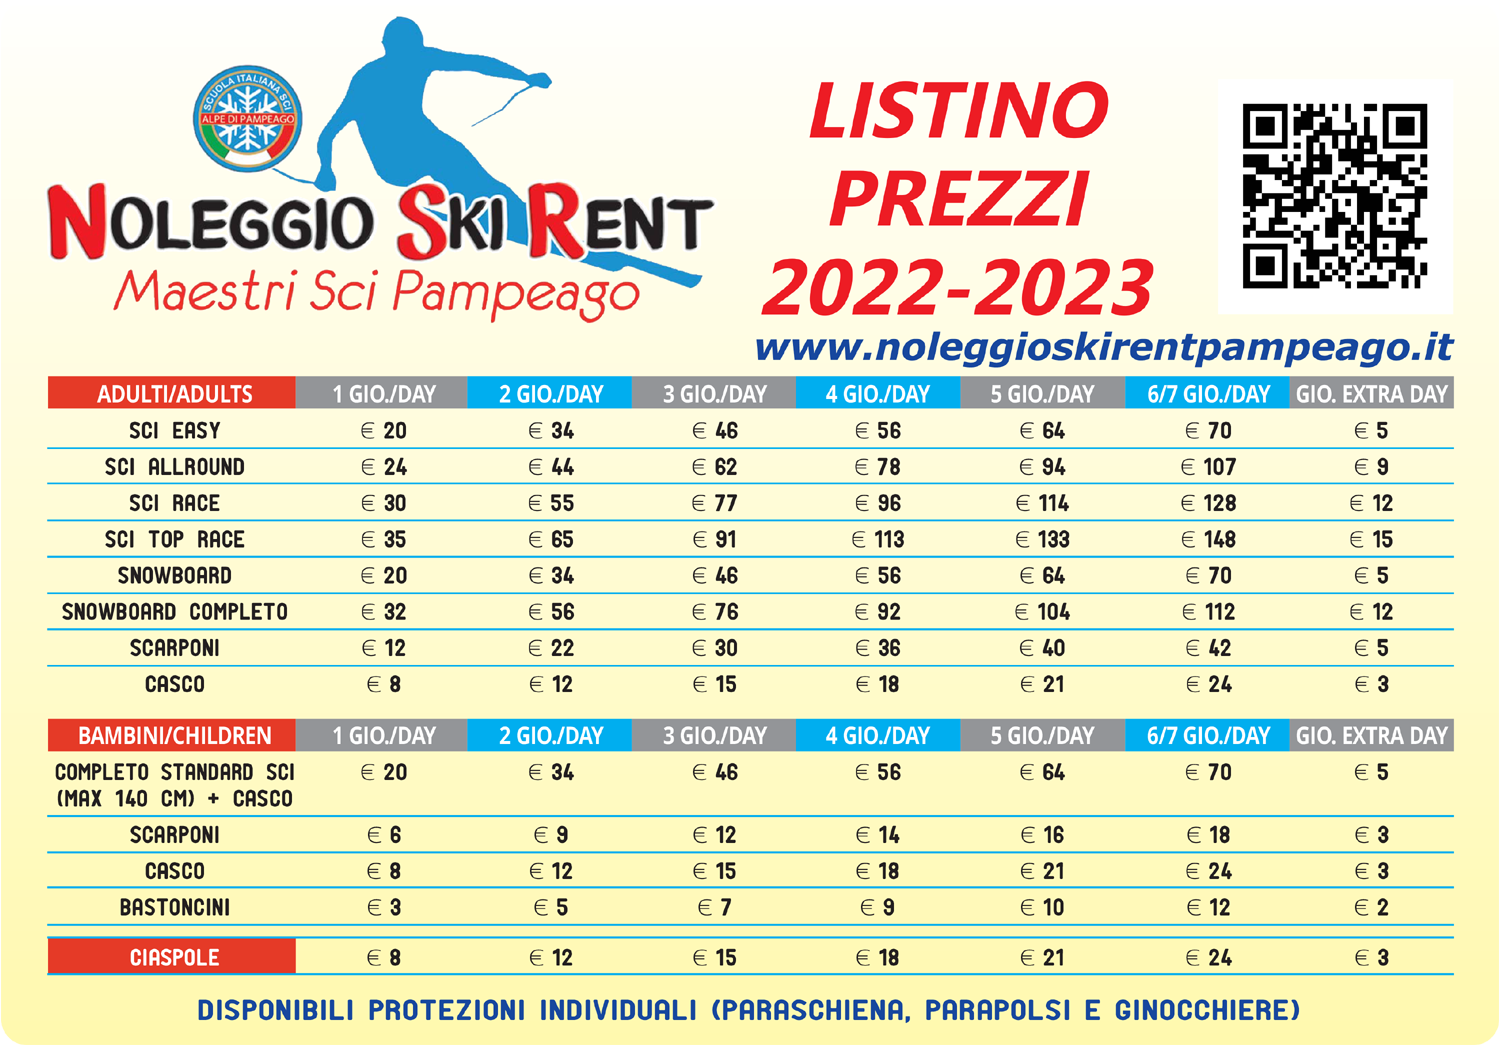 Prezzi Noleggio sci Skirent Maestri di sci Pampeago - stagione 2022/2023